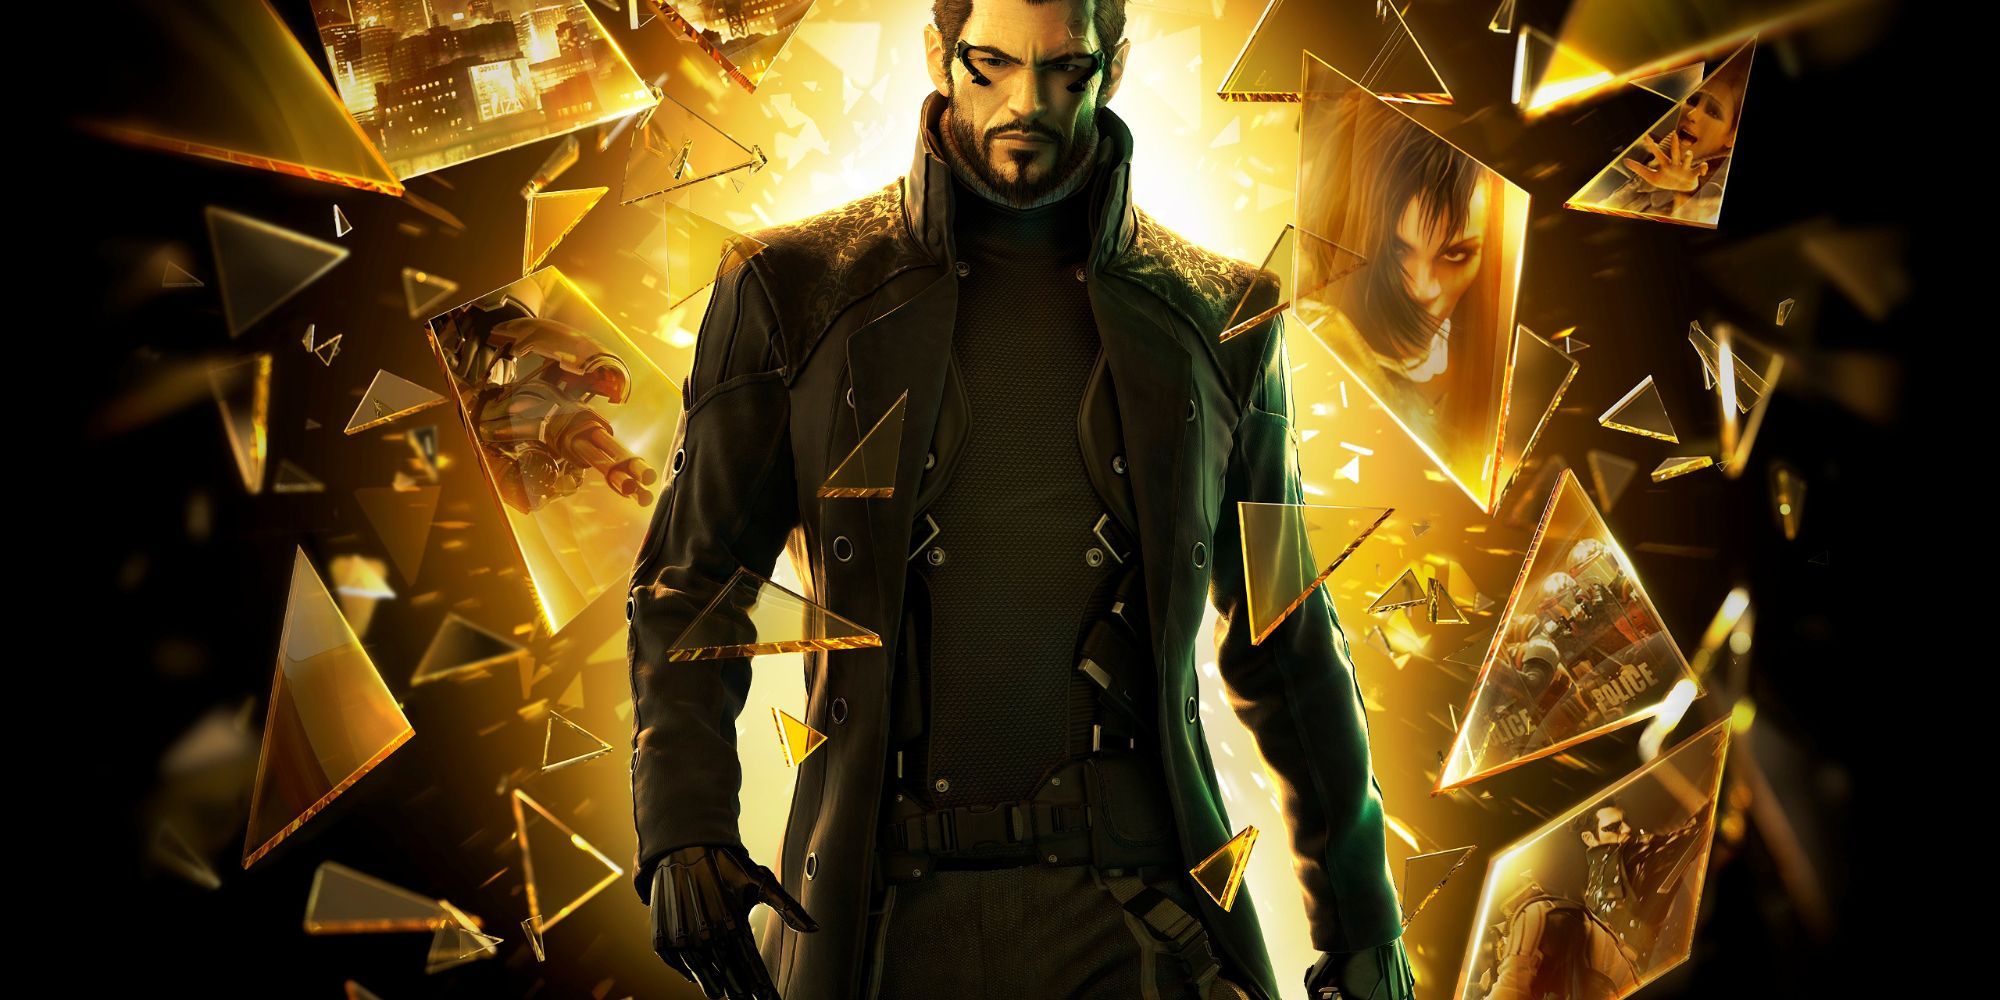 pôster do jogo Deus Ex Mankind Divided com o protagonista Adam Jensen